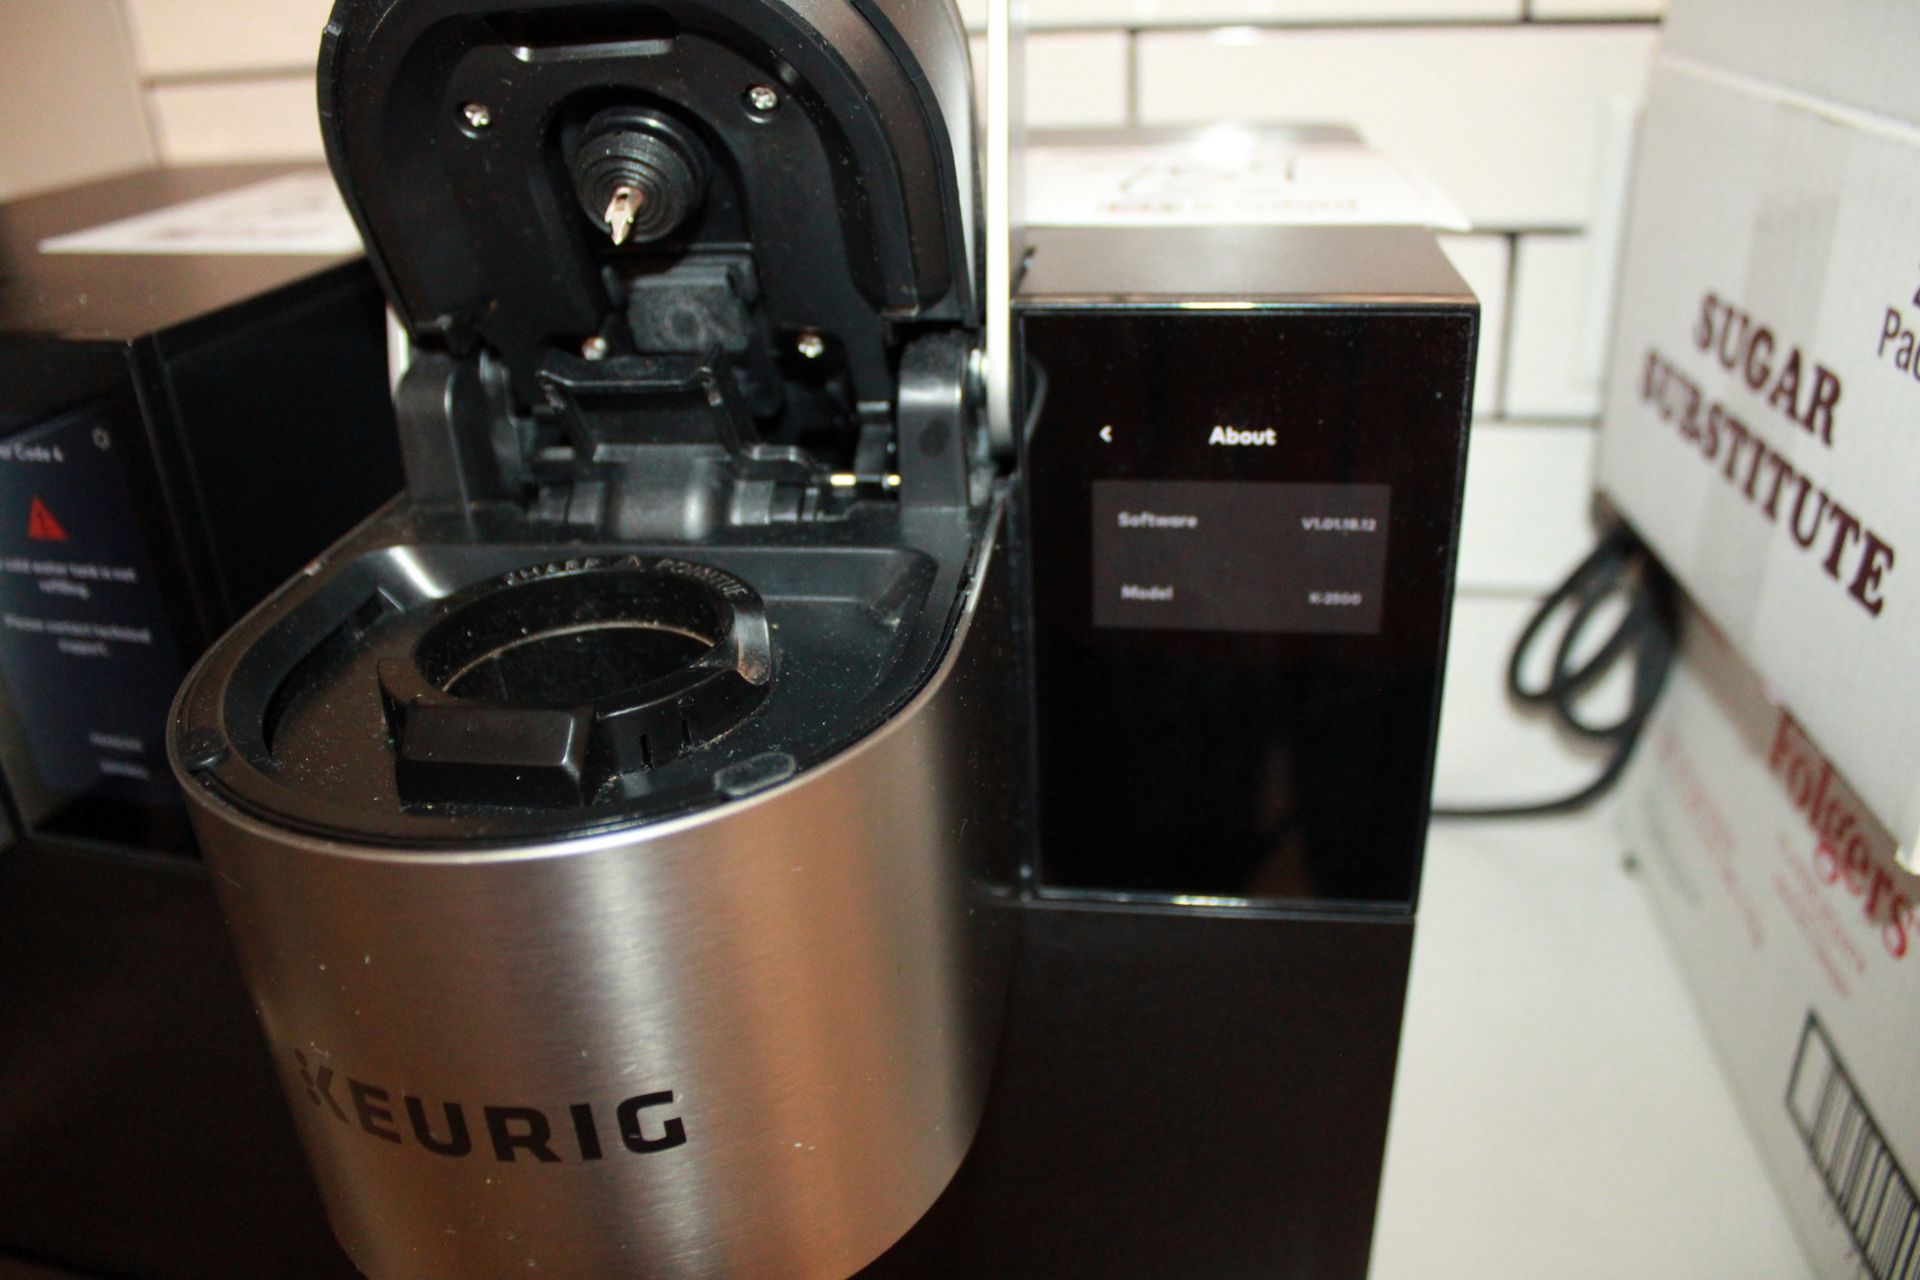 Keurig Commercial Series Coffee Maker Model K-2500 - Image 2 of 3